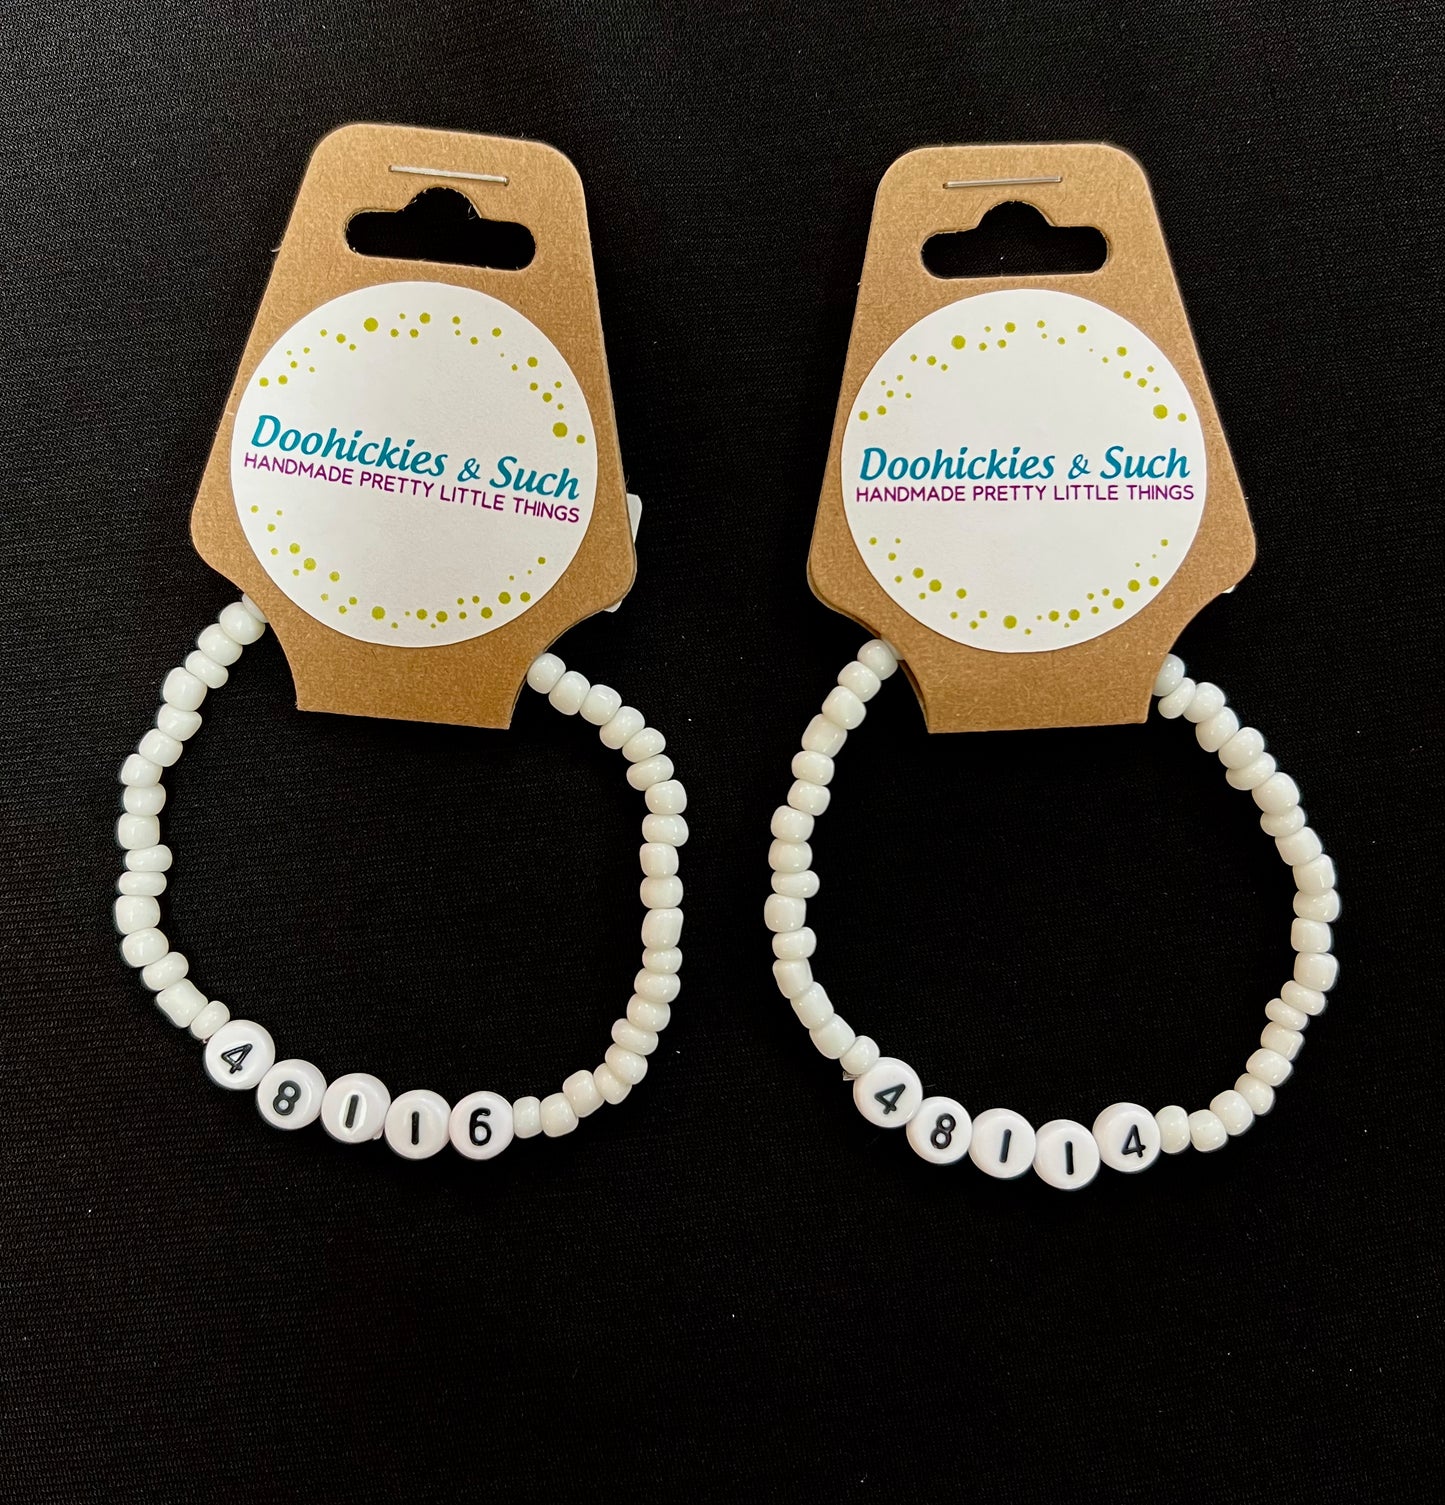 Zip Code Bracelets